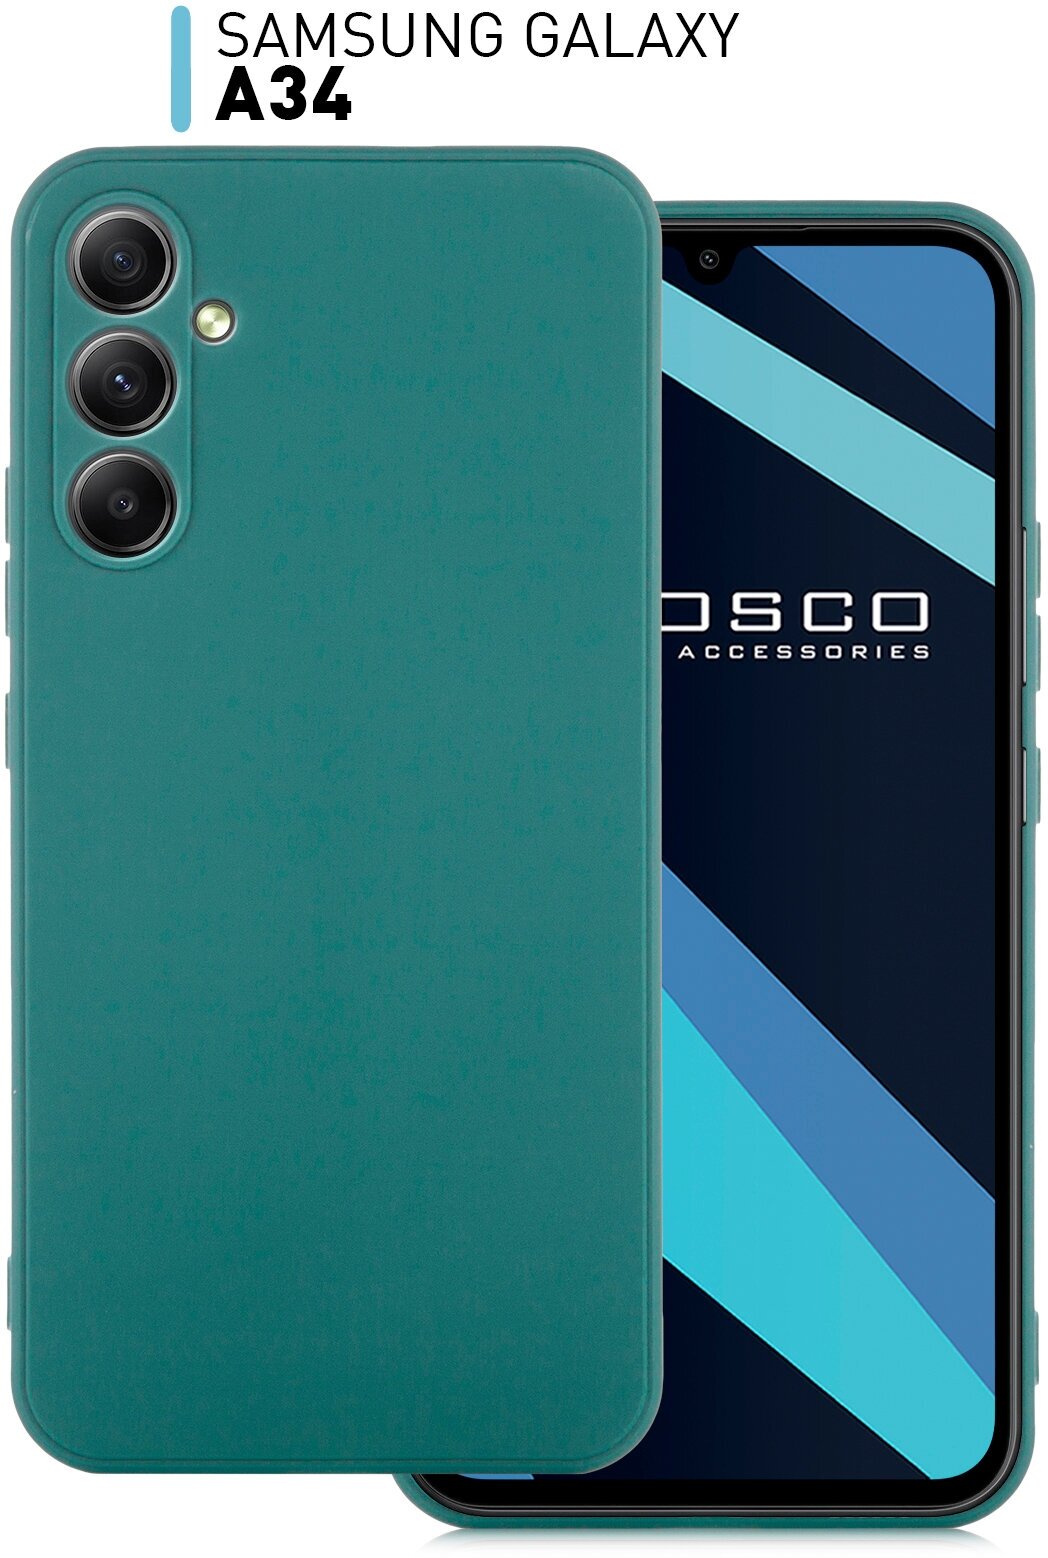 Чехол ROSCO для Samsung Galaxy A34 ( Самсунг Галакси А34 ), силиконовый чехол, тонкий, матовое покрытие, защита модуля камер, темно-зеленый